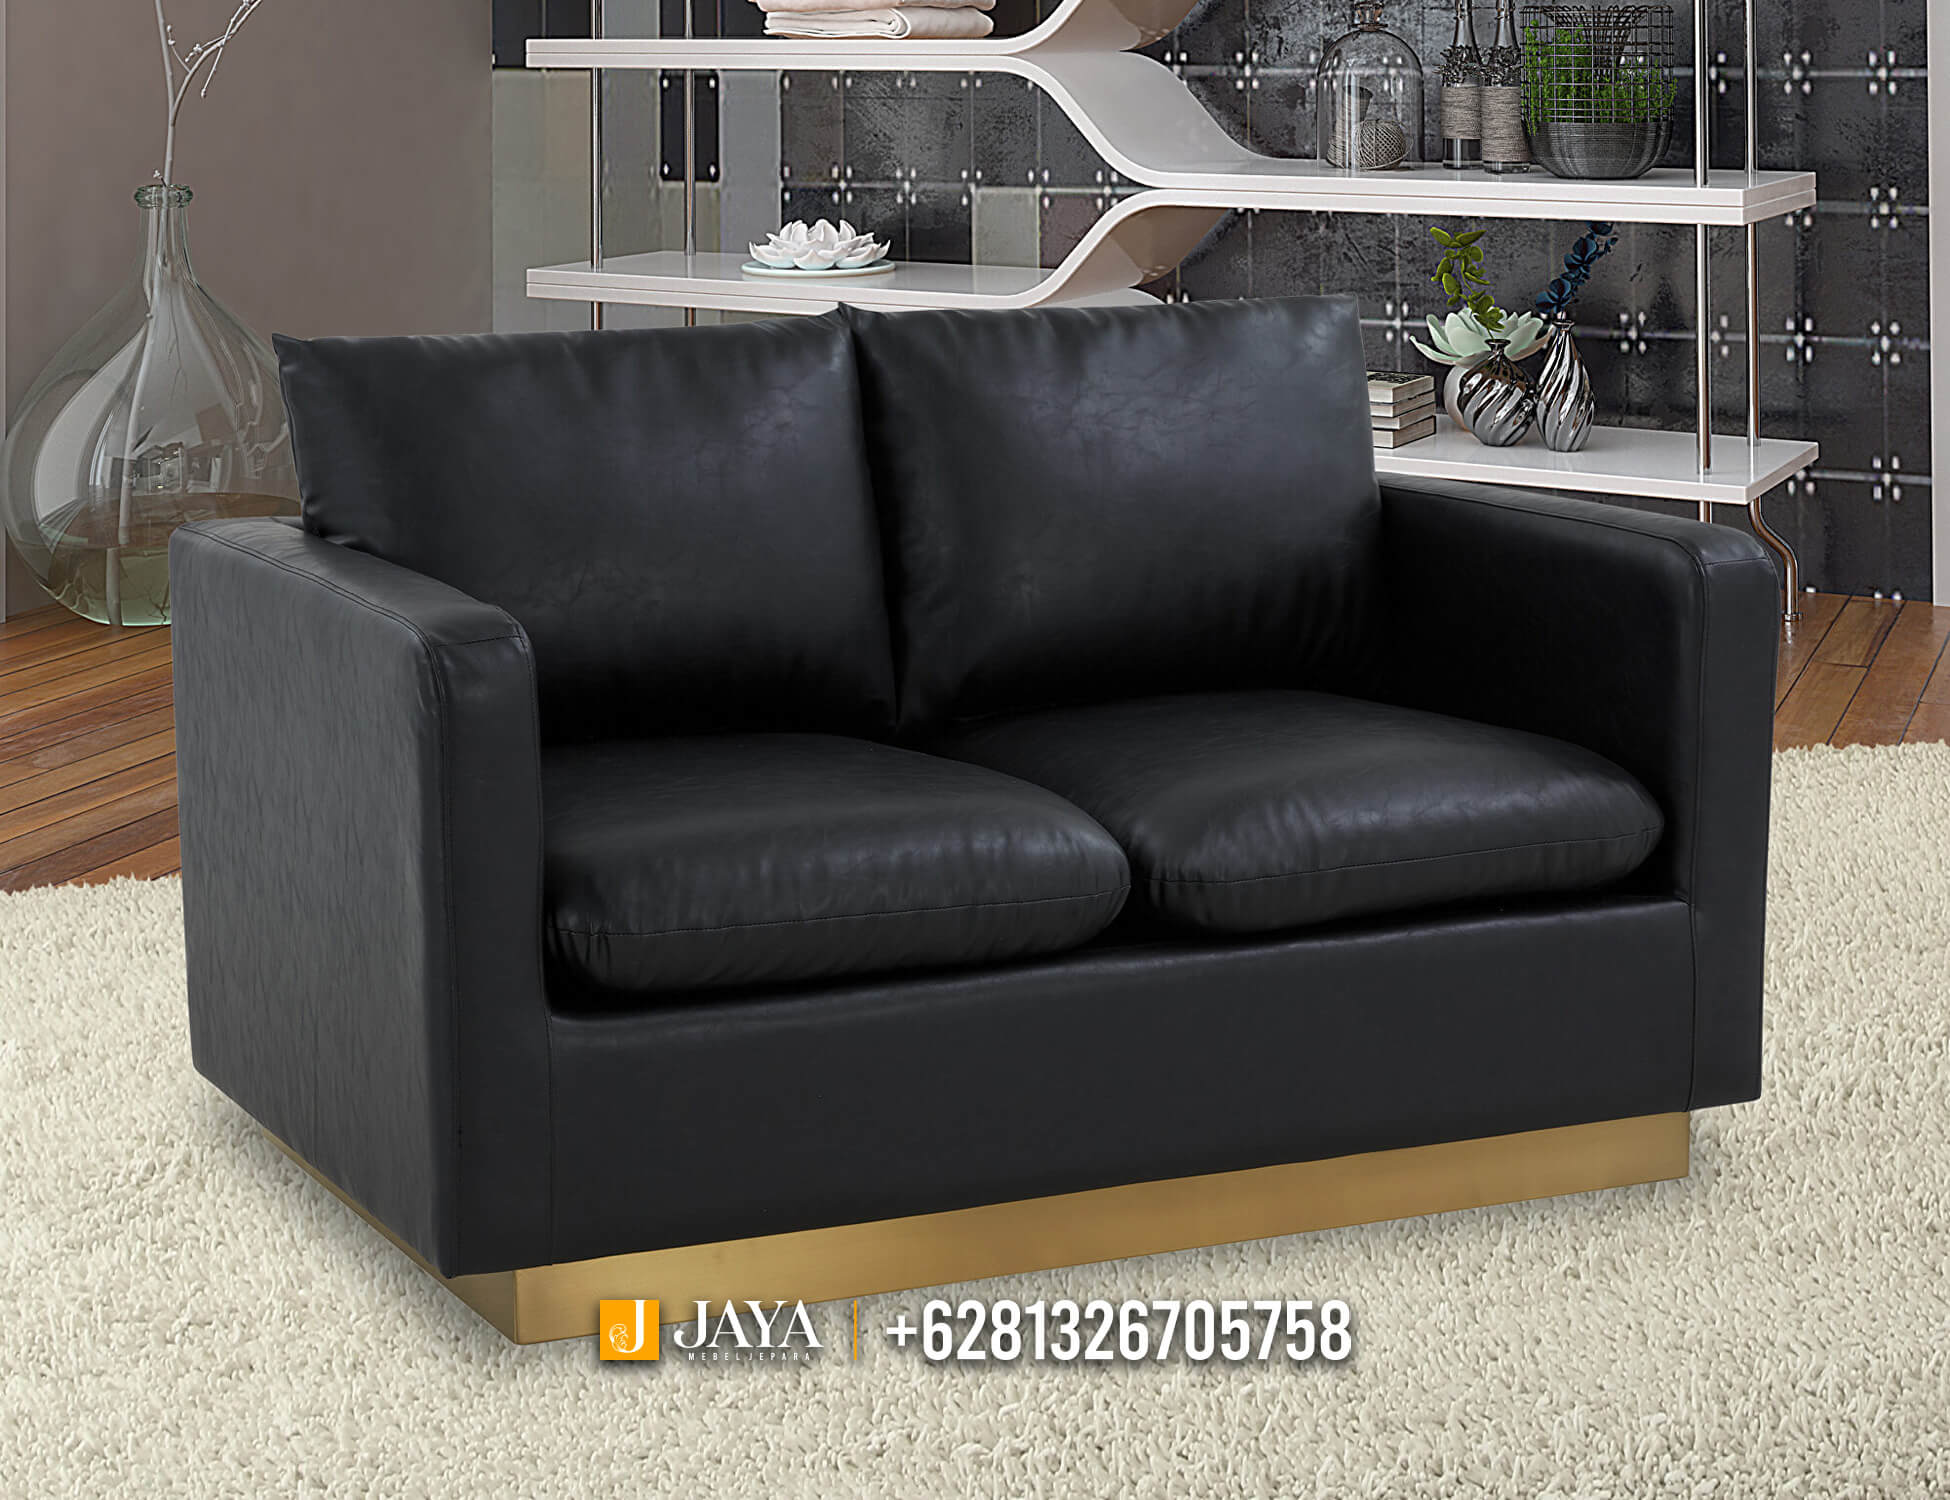 Desain Sofa Minimalis Terbaru 2 Seater Elegant Model JM767